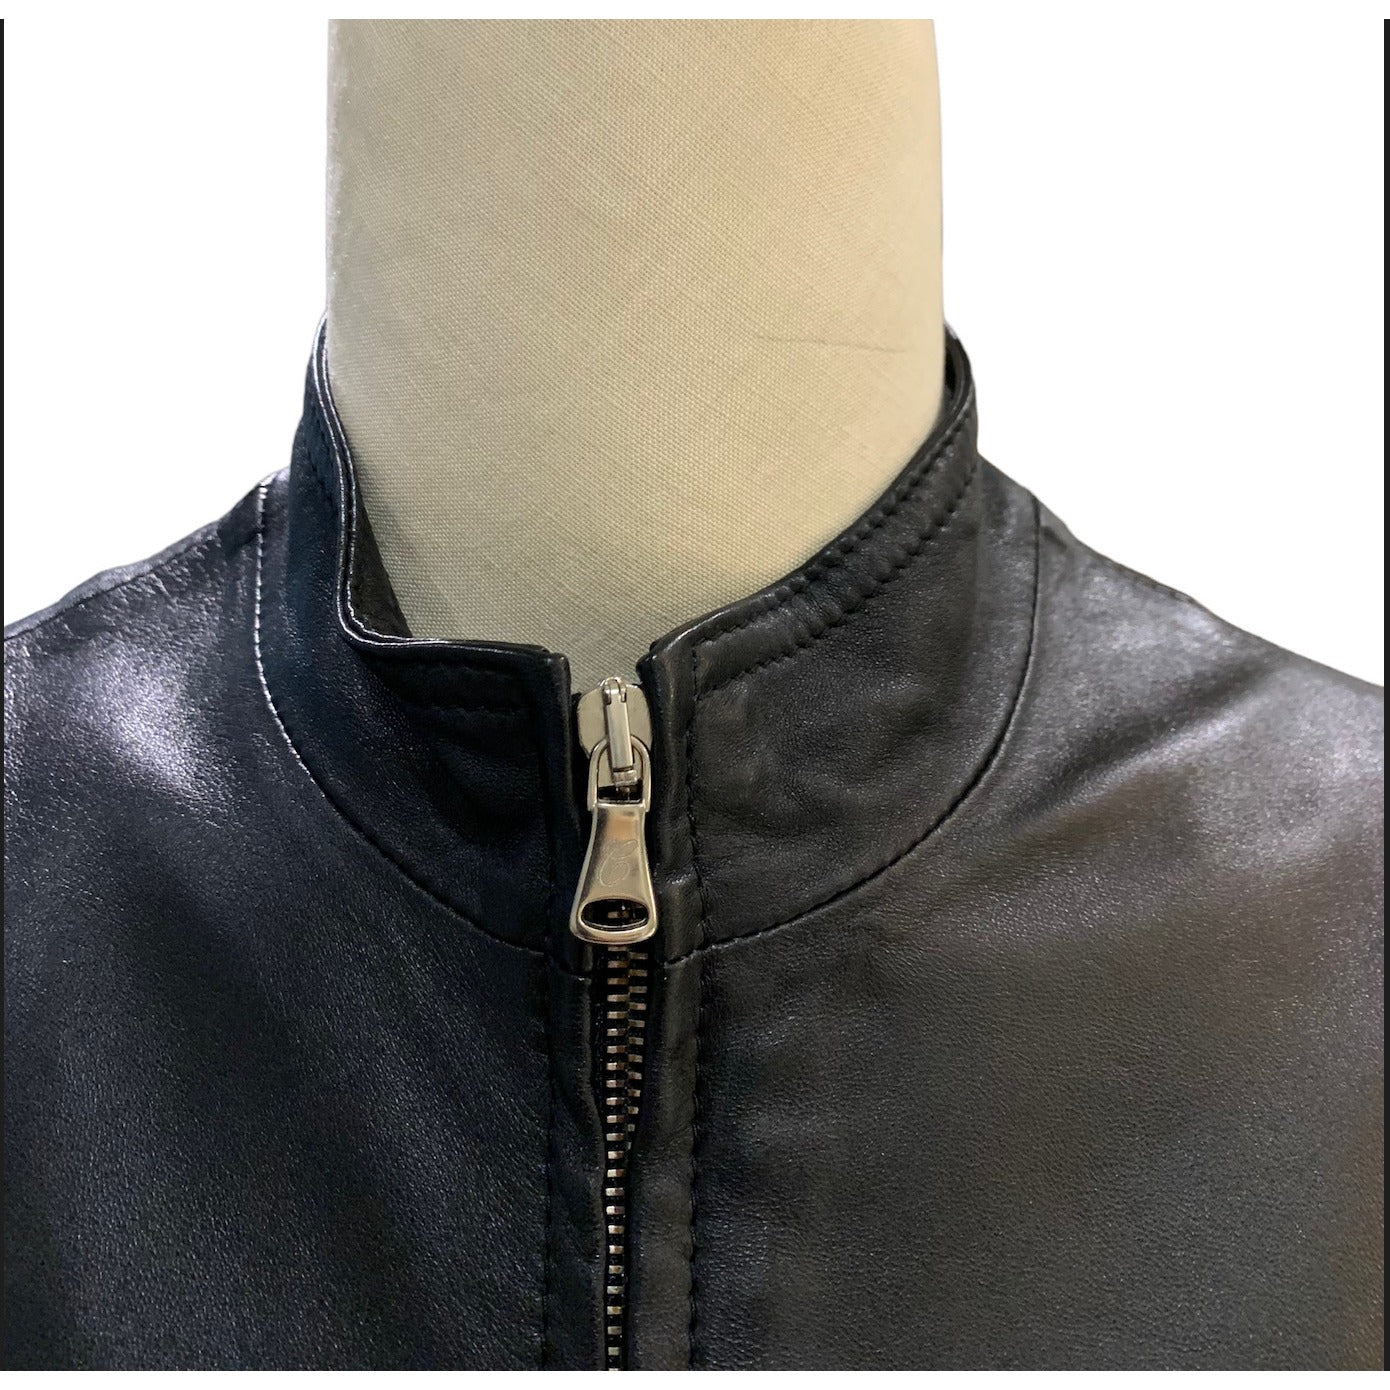 Closeup Of Collar And Zipper